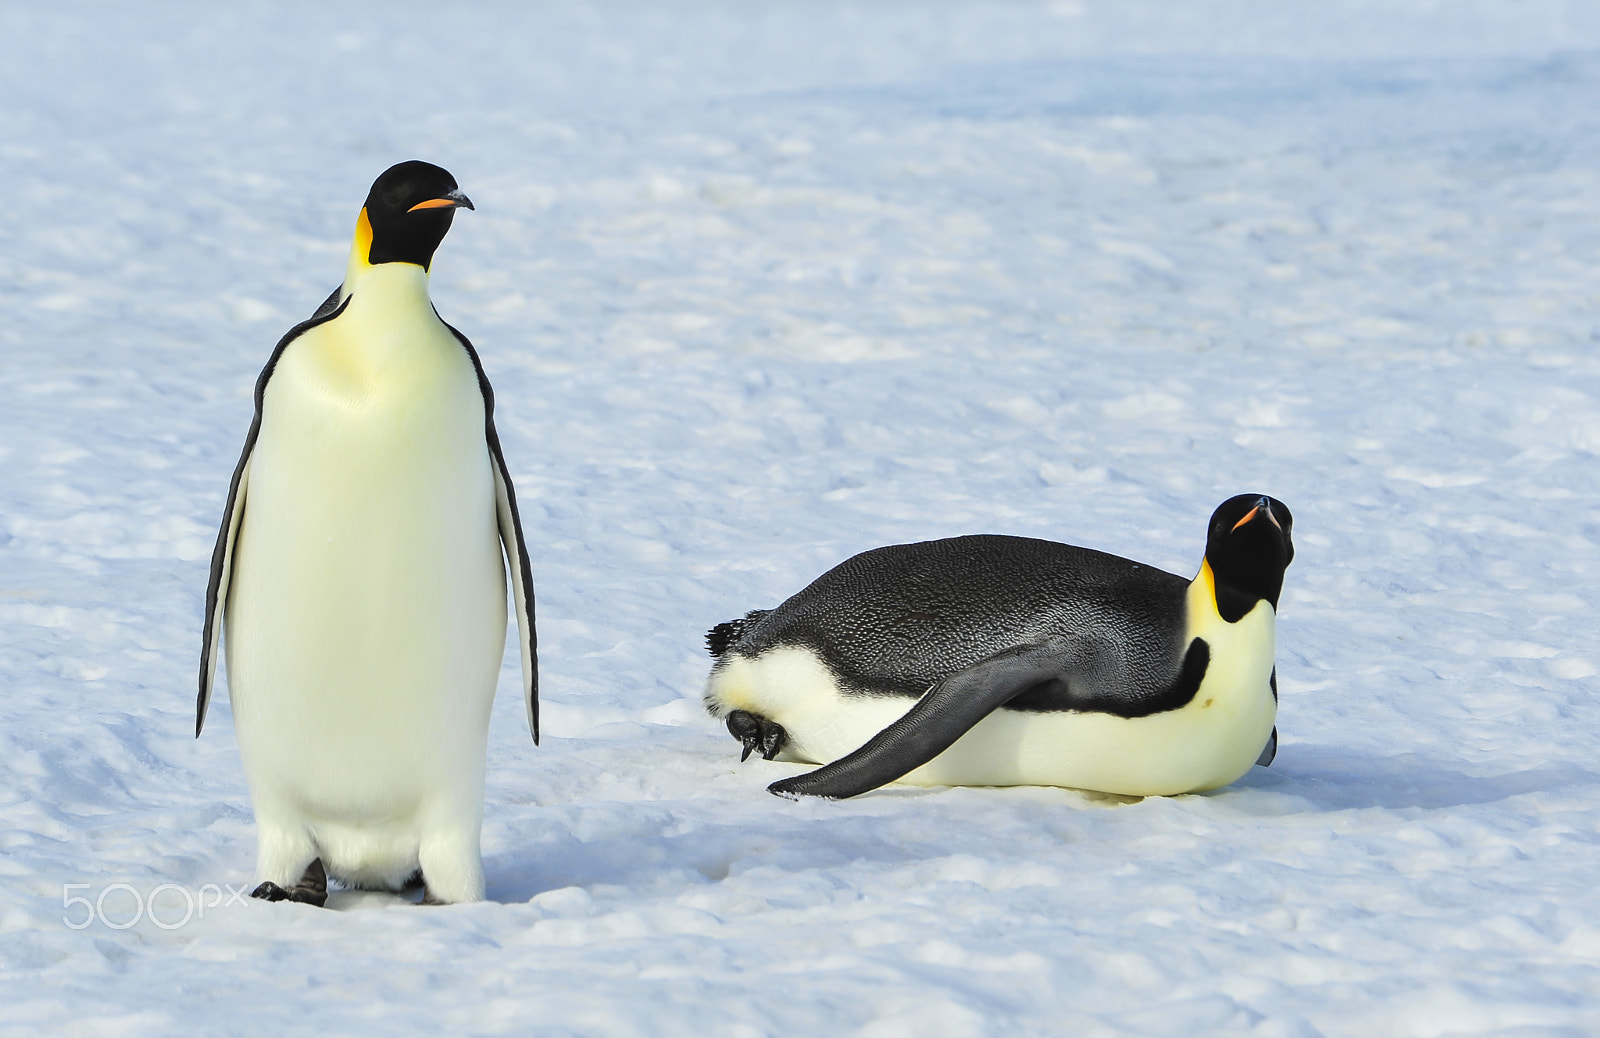 Nikon AF Nikkor 80-400mm F4.5-5.6D ED VR sample photo. Two emperor penguins on the snow photography